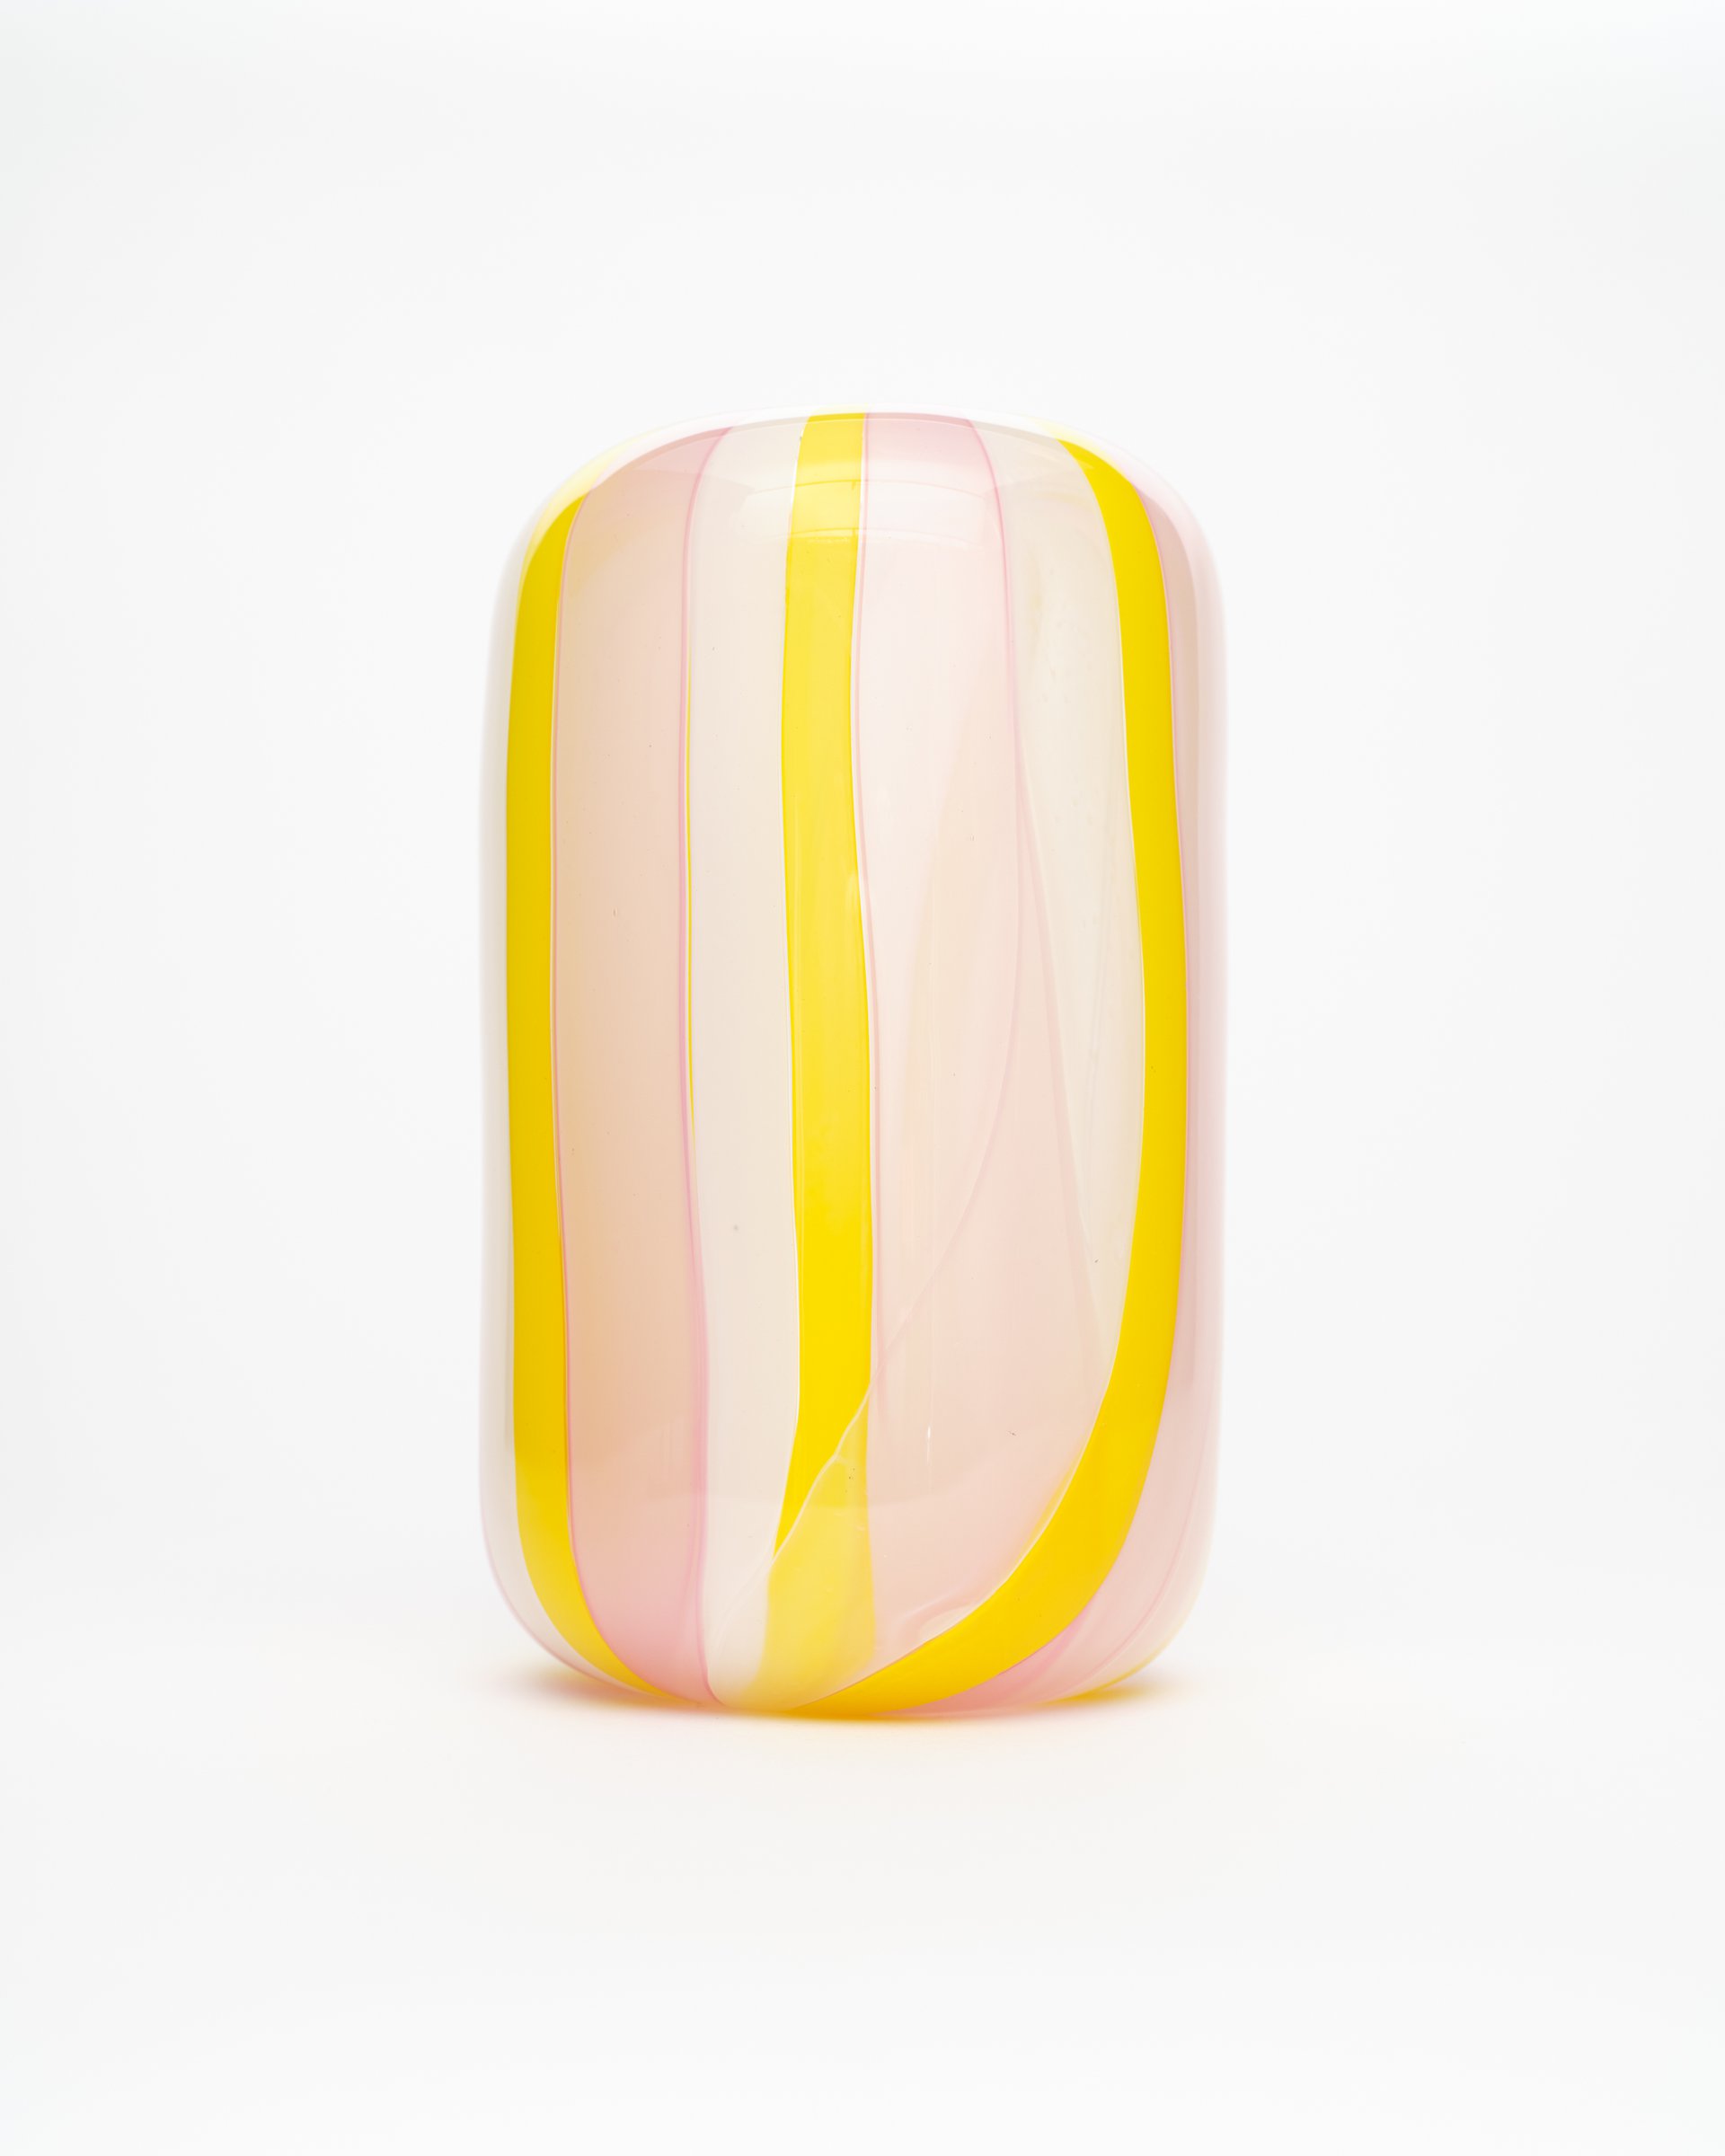 Marshmallow Vase 2